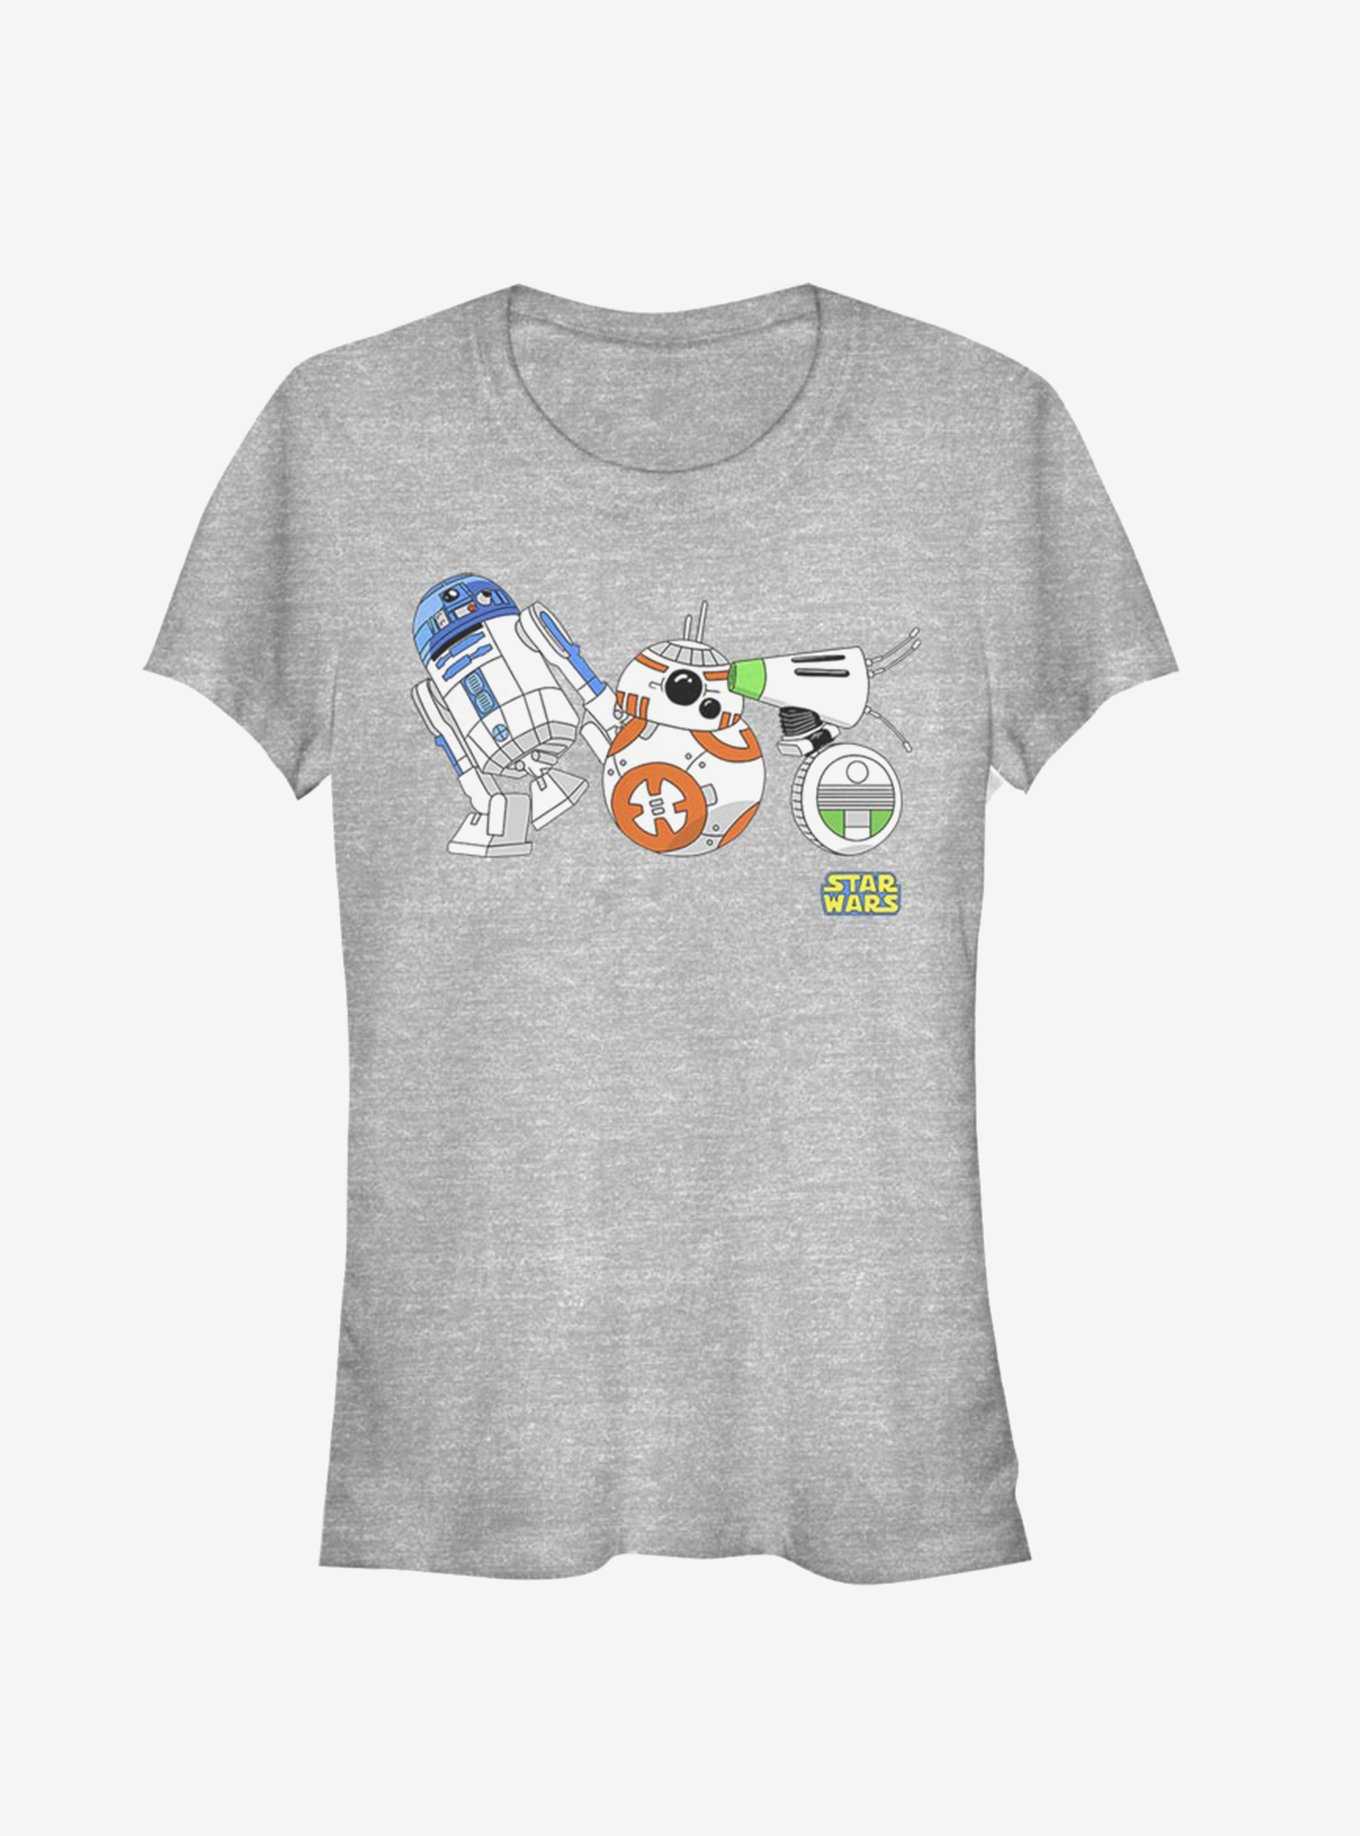 Star Wars Episode IX The Rise Of Skywalker Cartoon Droid Lineup Girls T-Shirt, , hi-res